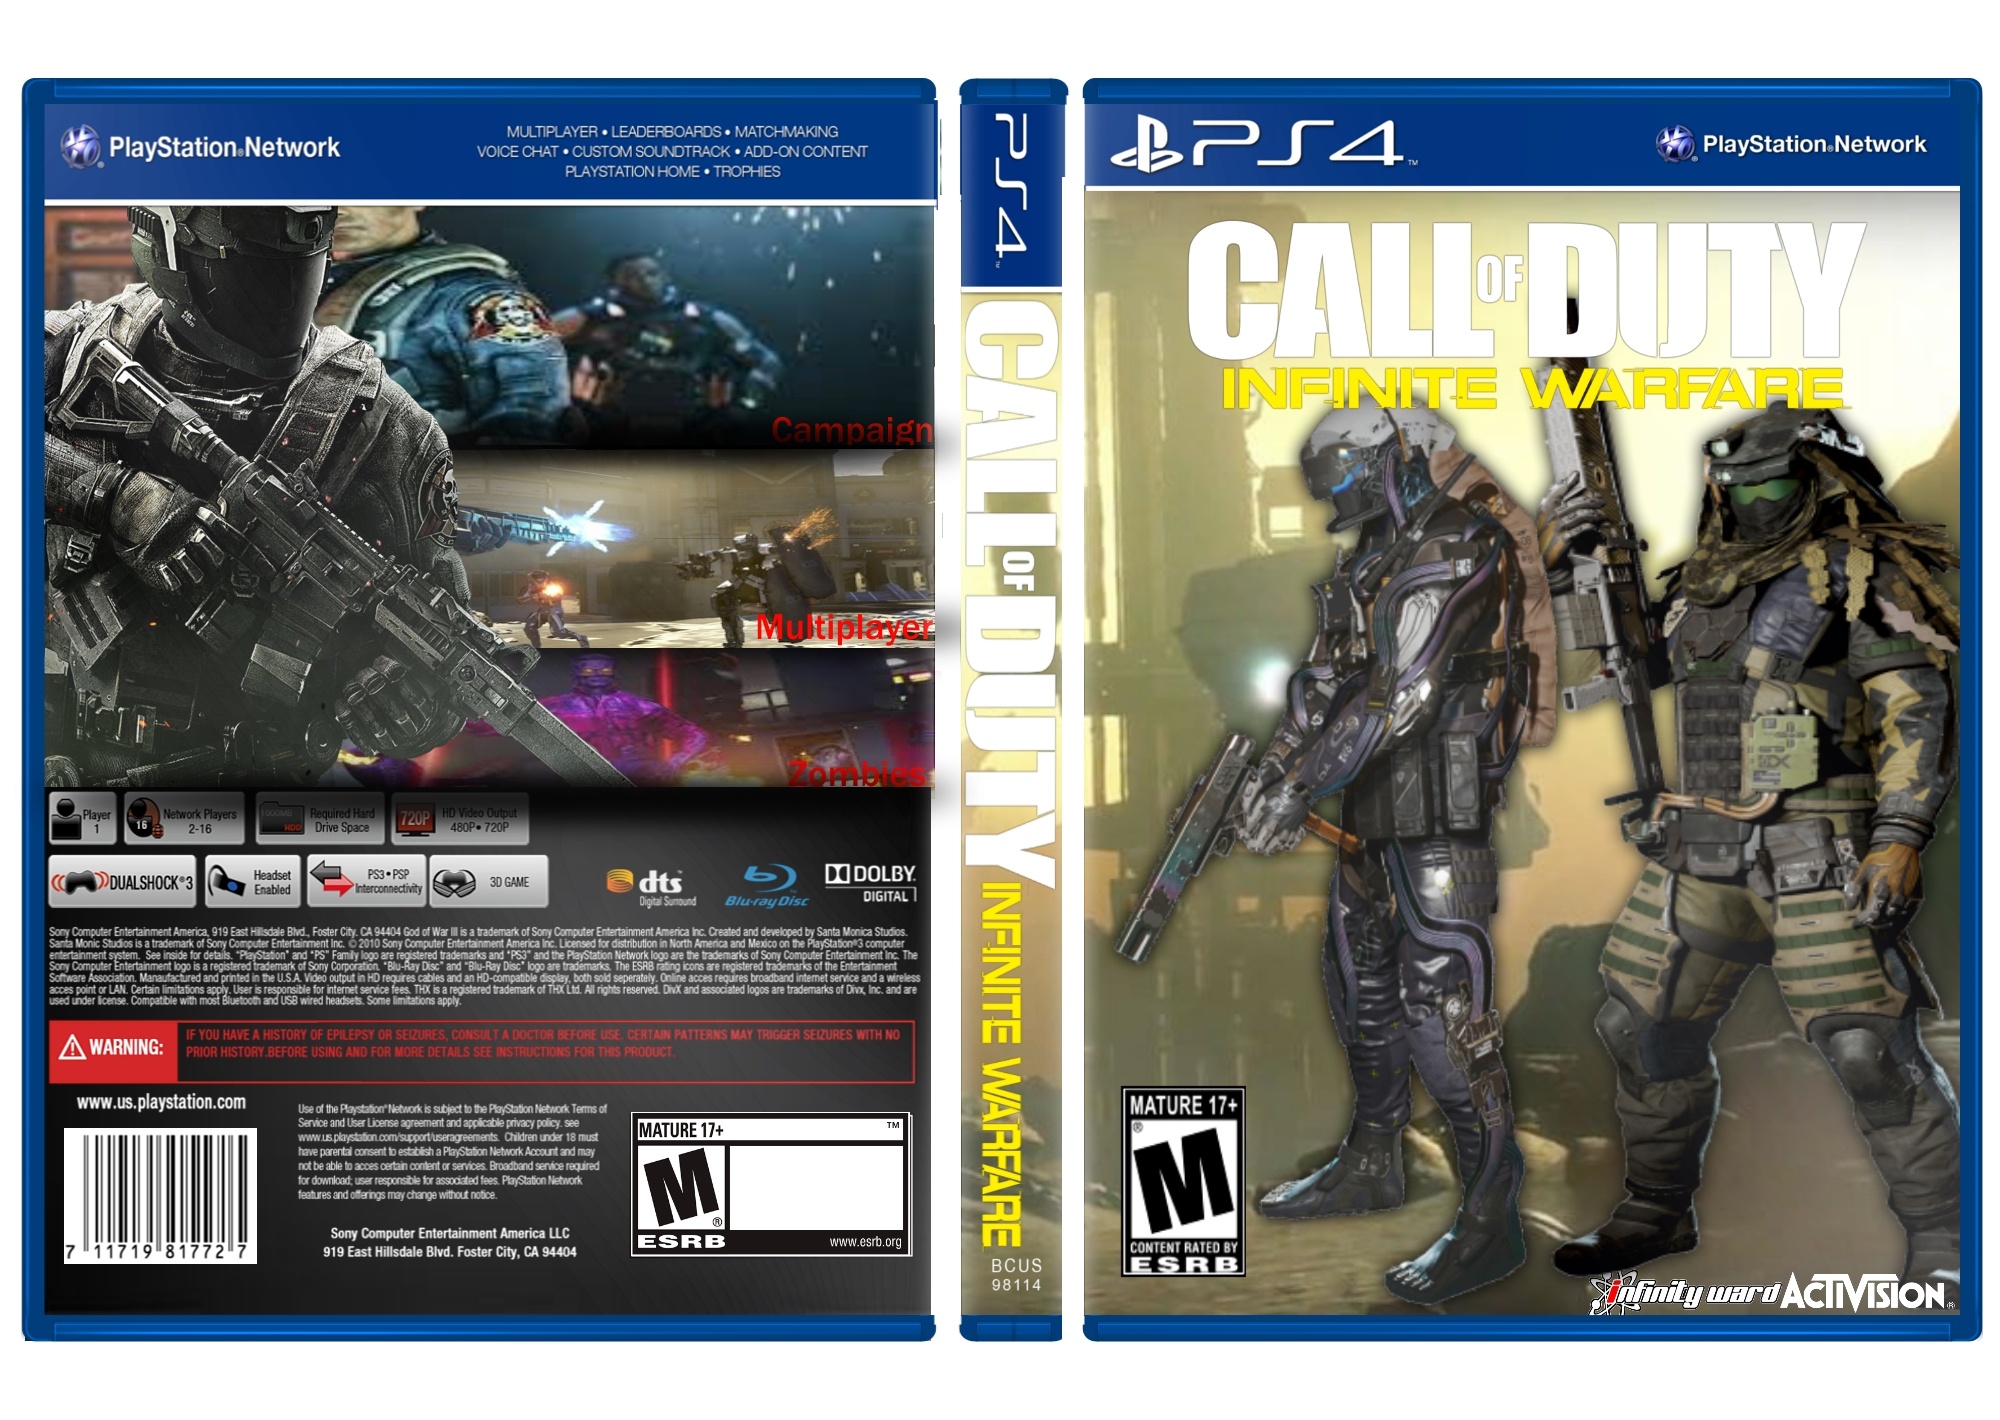 Call of Duty: Infinite Warfare box cover